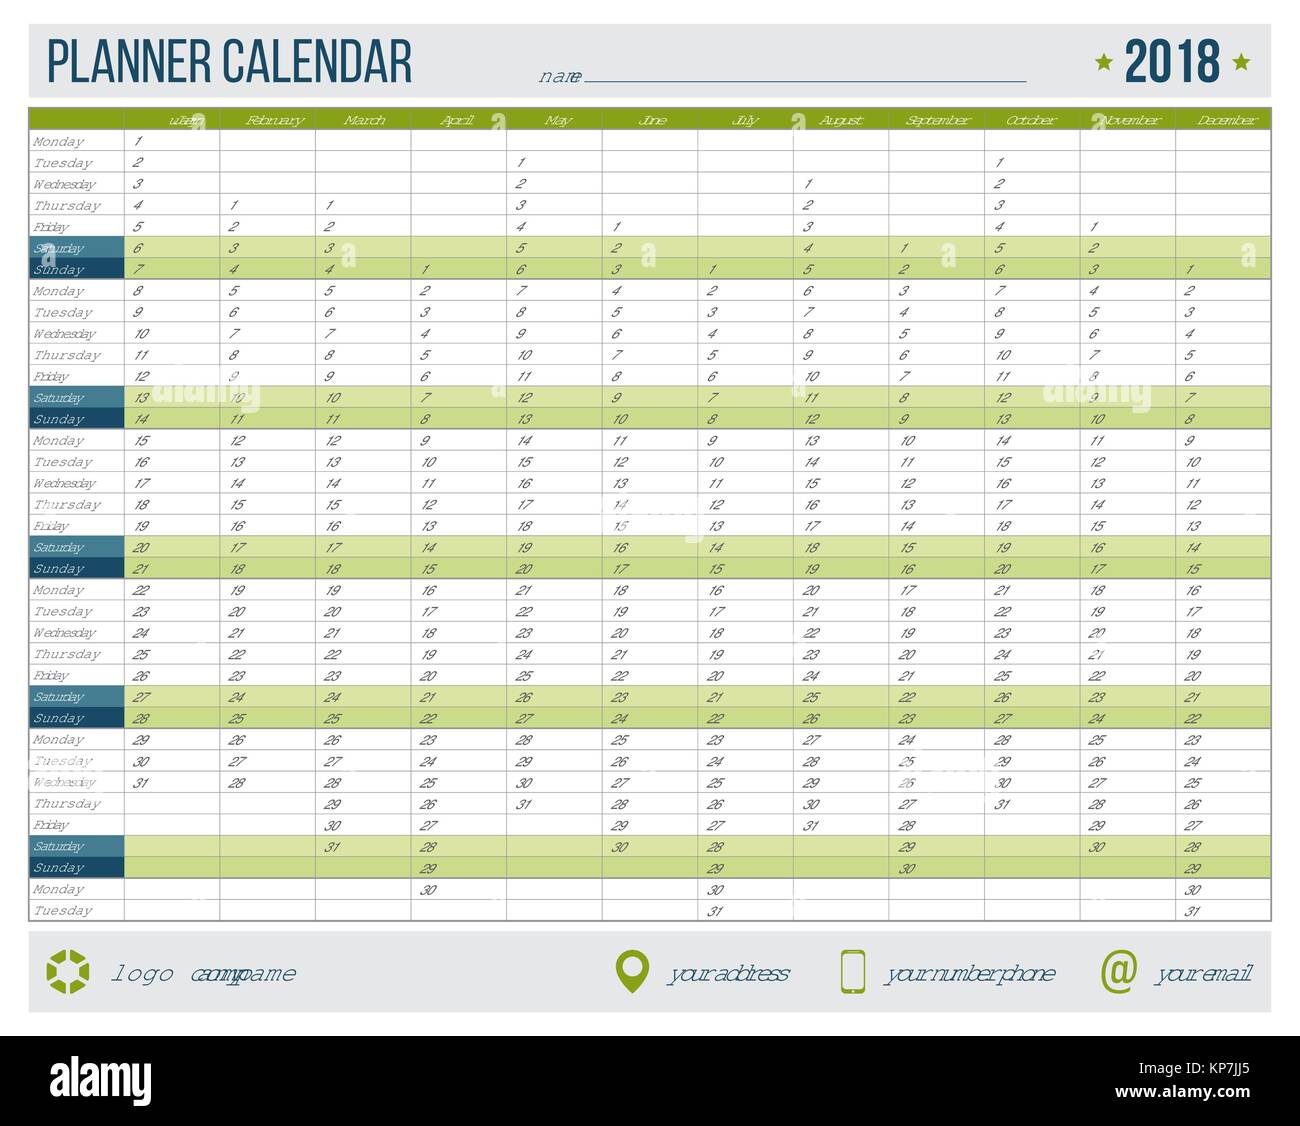 Englisch Kalender Planer Fur Das Jahr 18 12 Monate Corporate Design Planner Template Grosse Druckbare Kalender Vorlagen Stock Vektorgrafik Alamy